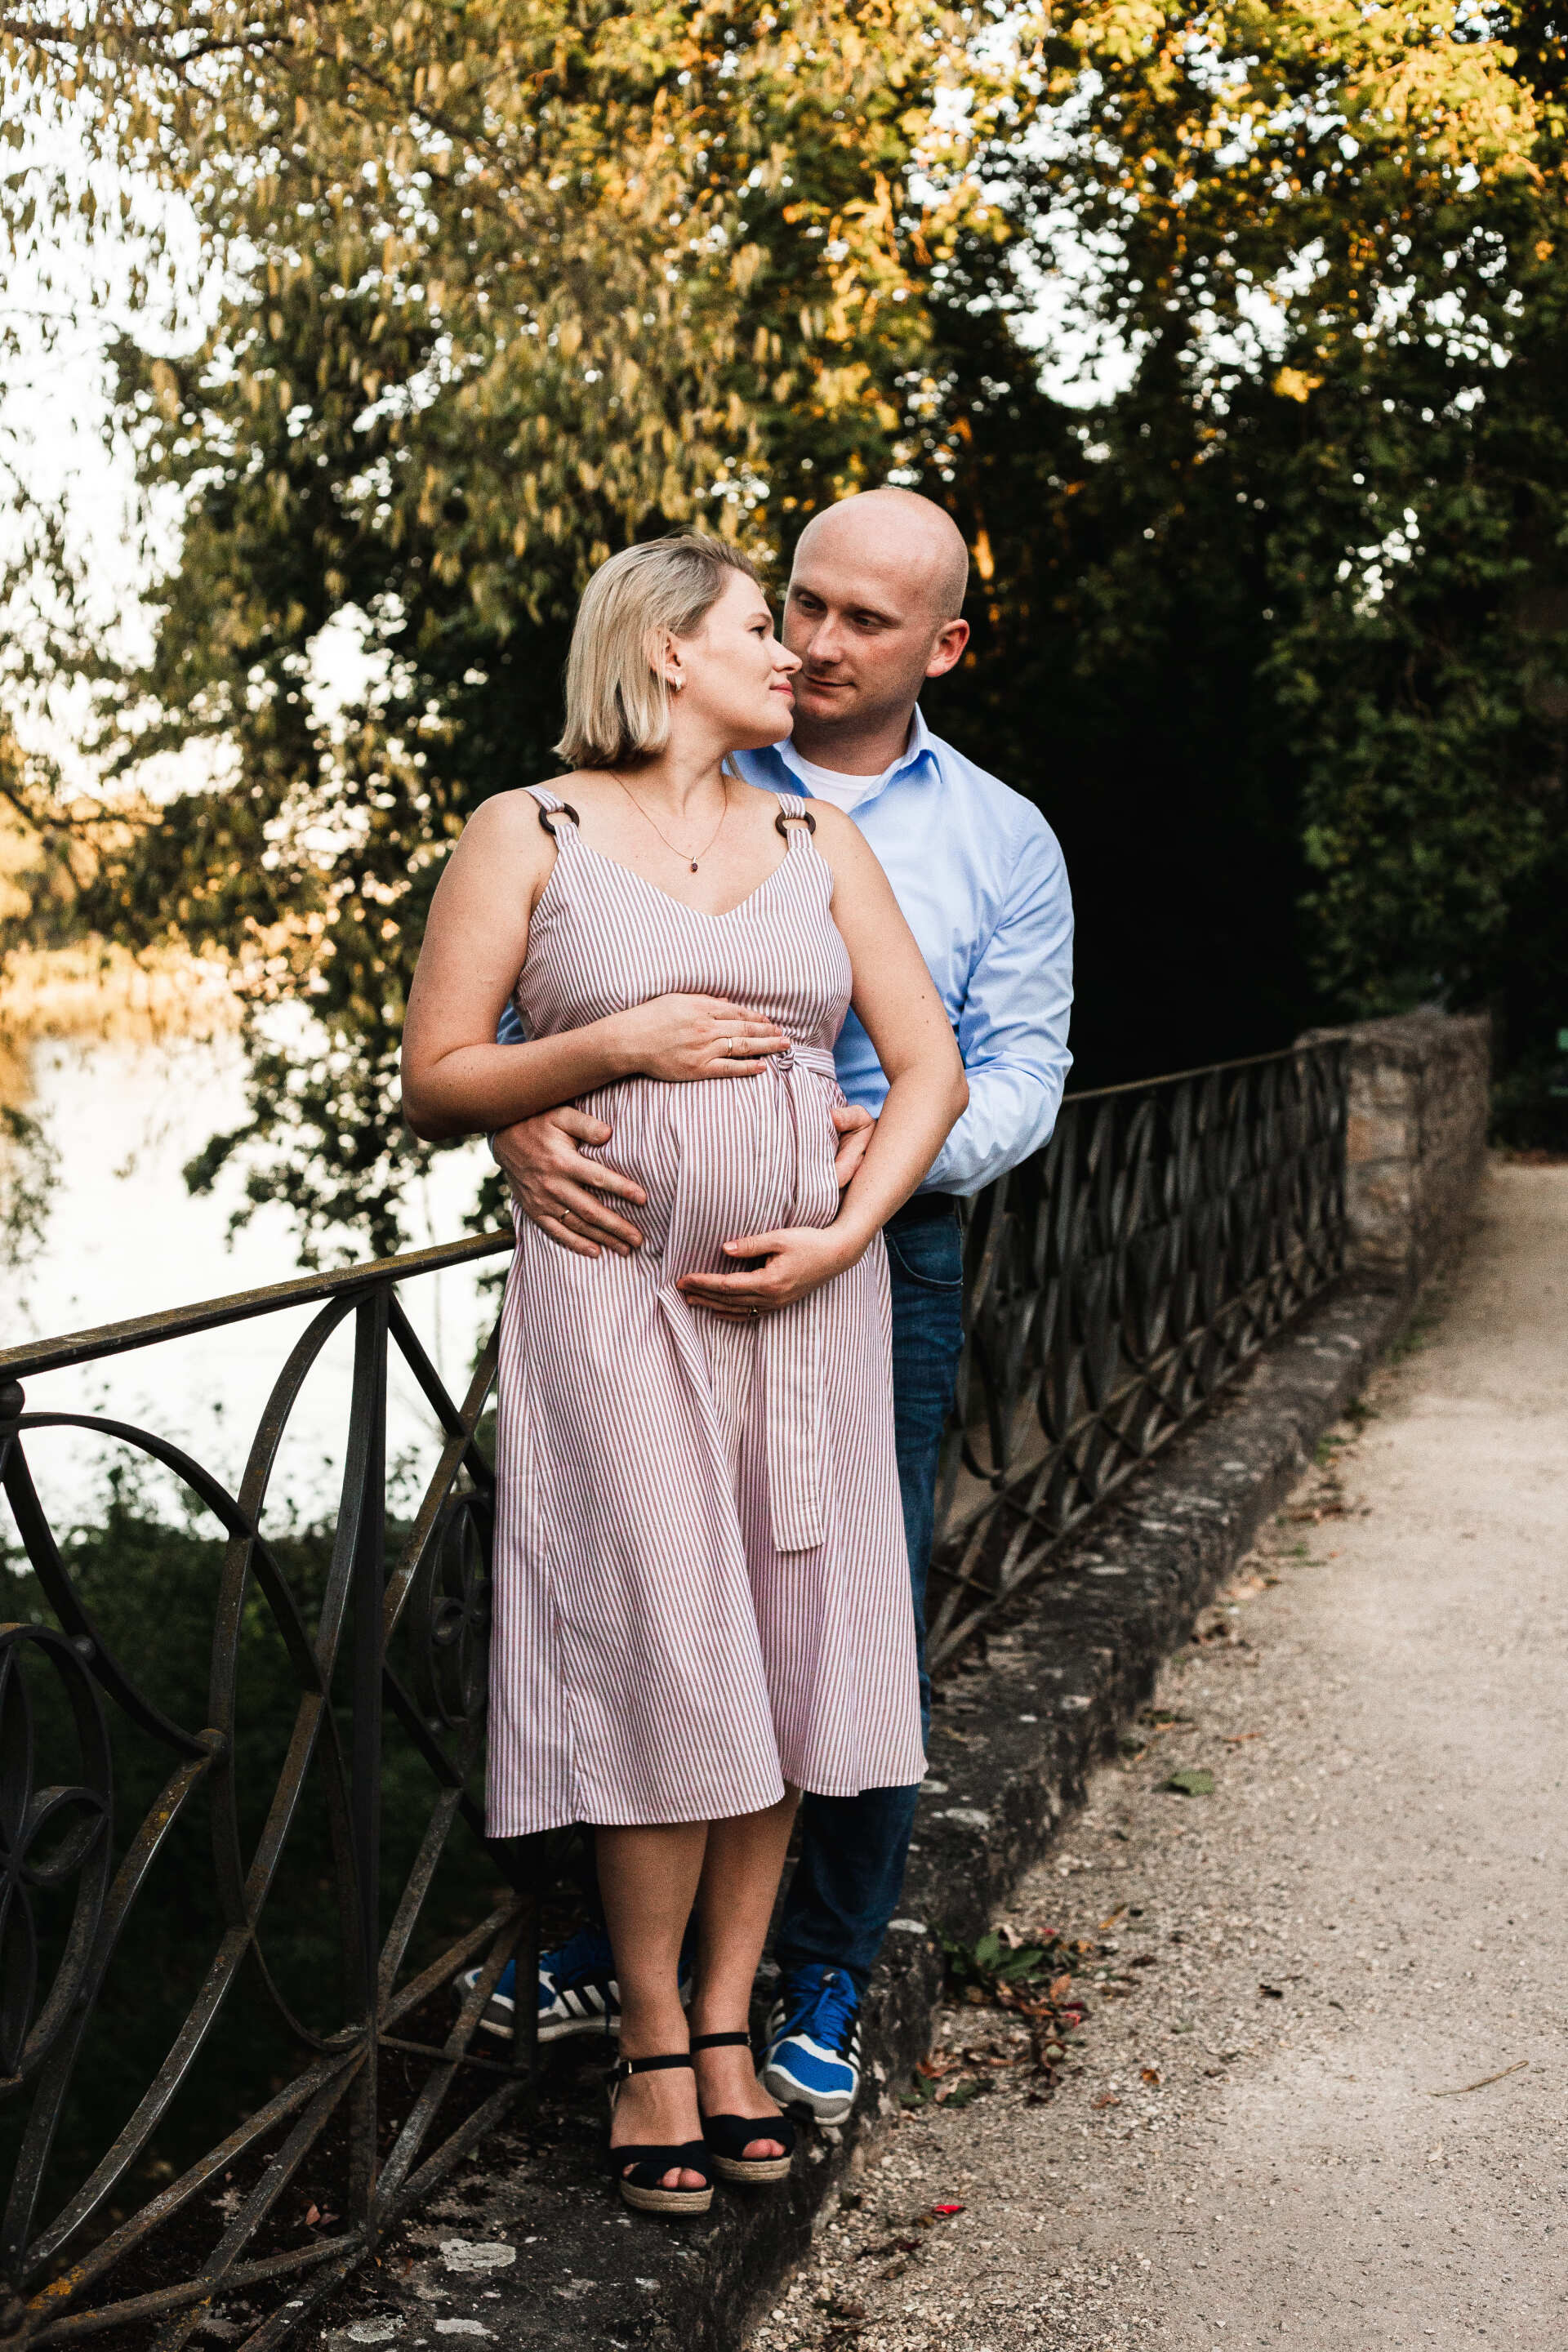 Auf dem Bild sieht man einen Mann mit seiner Frau beim Babybauchshooting in Regensburg